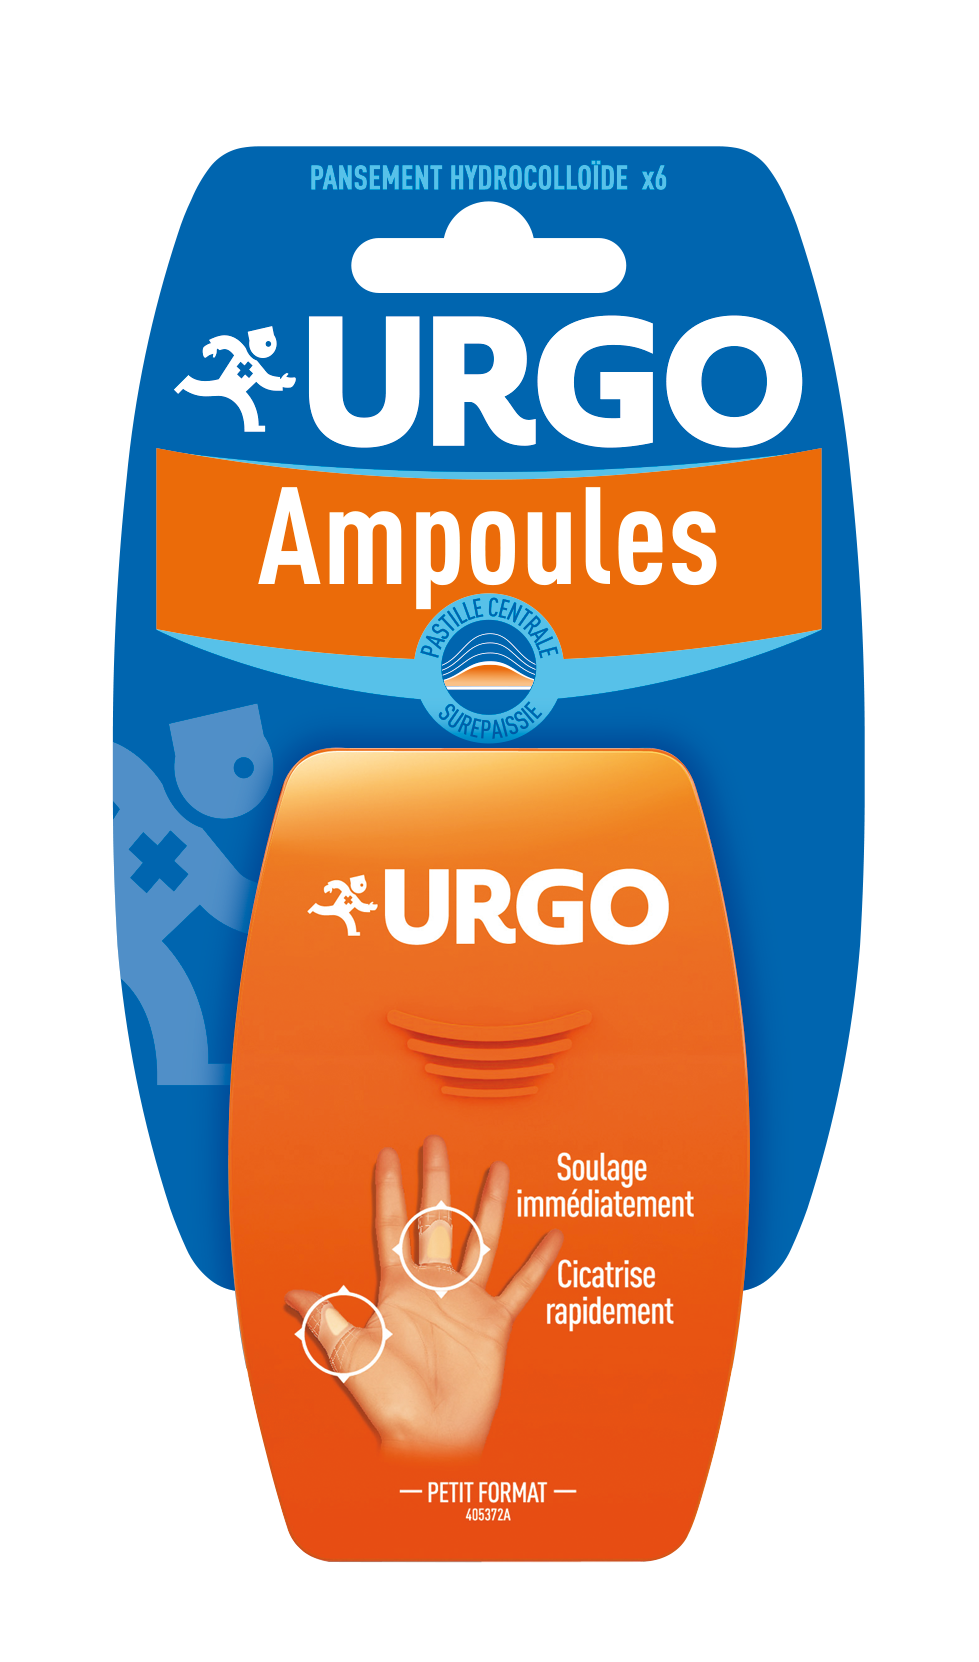 130215-Urgo-Ampoules-Main